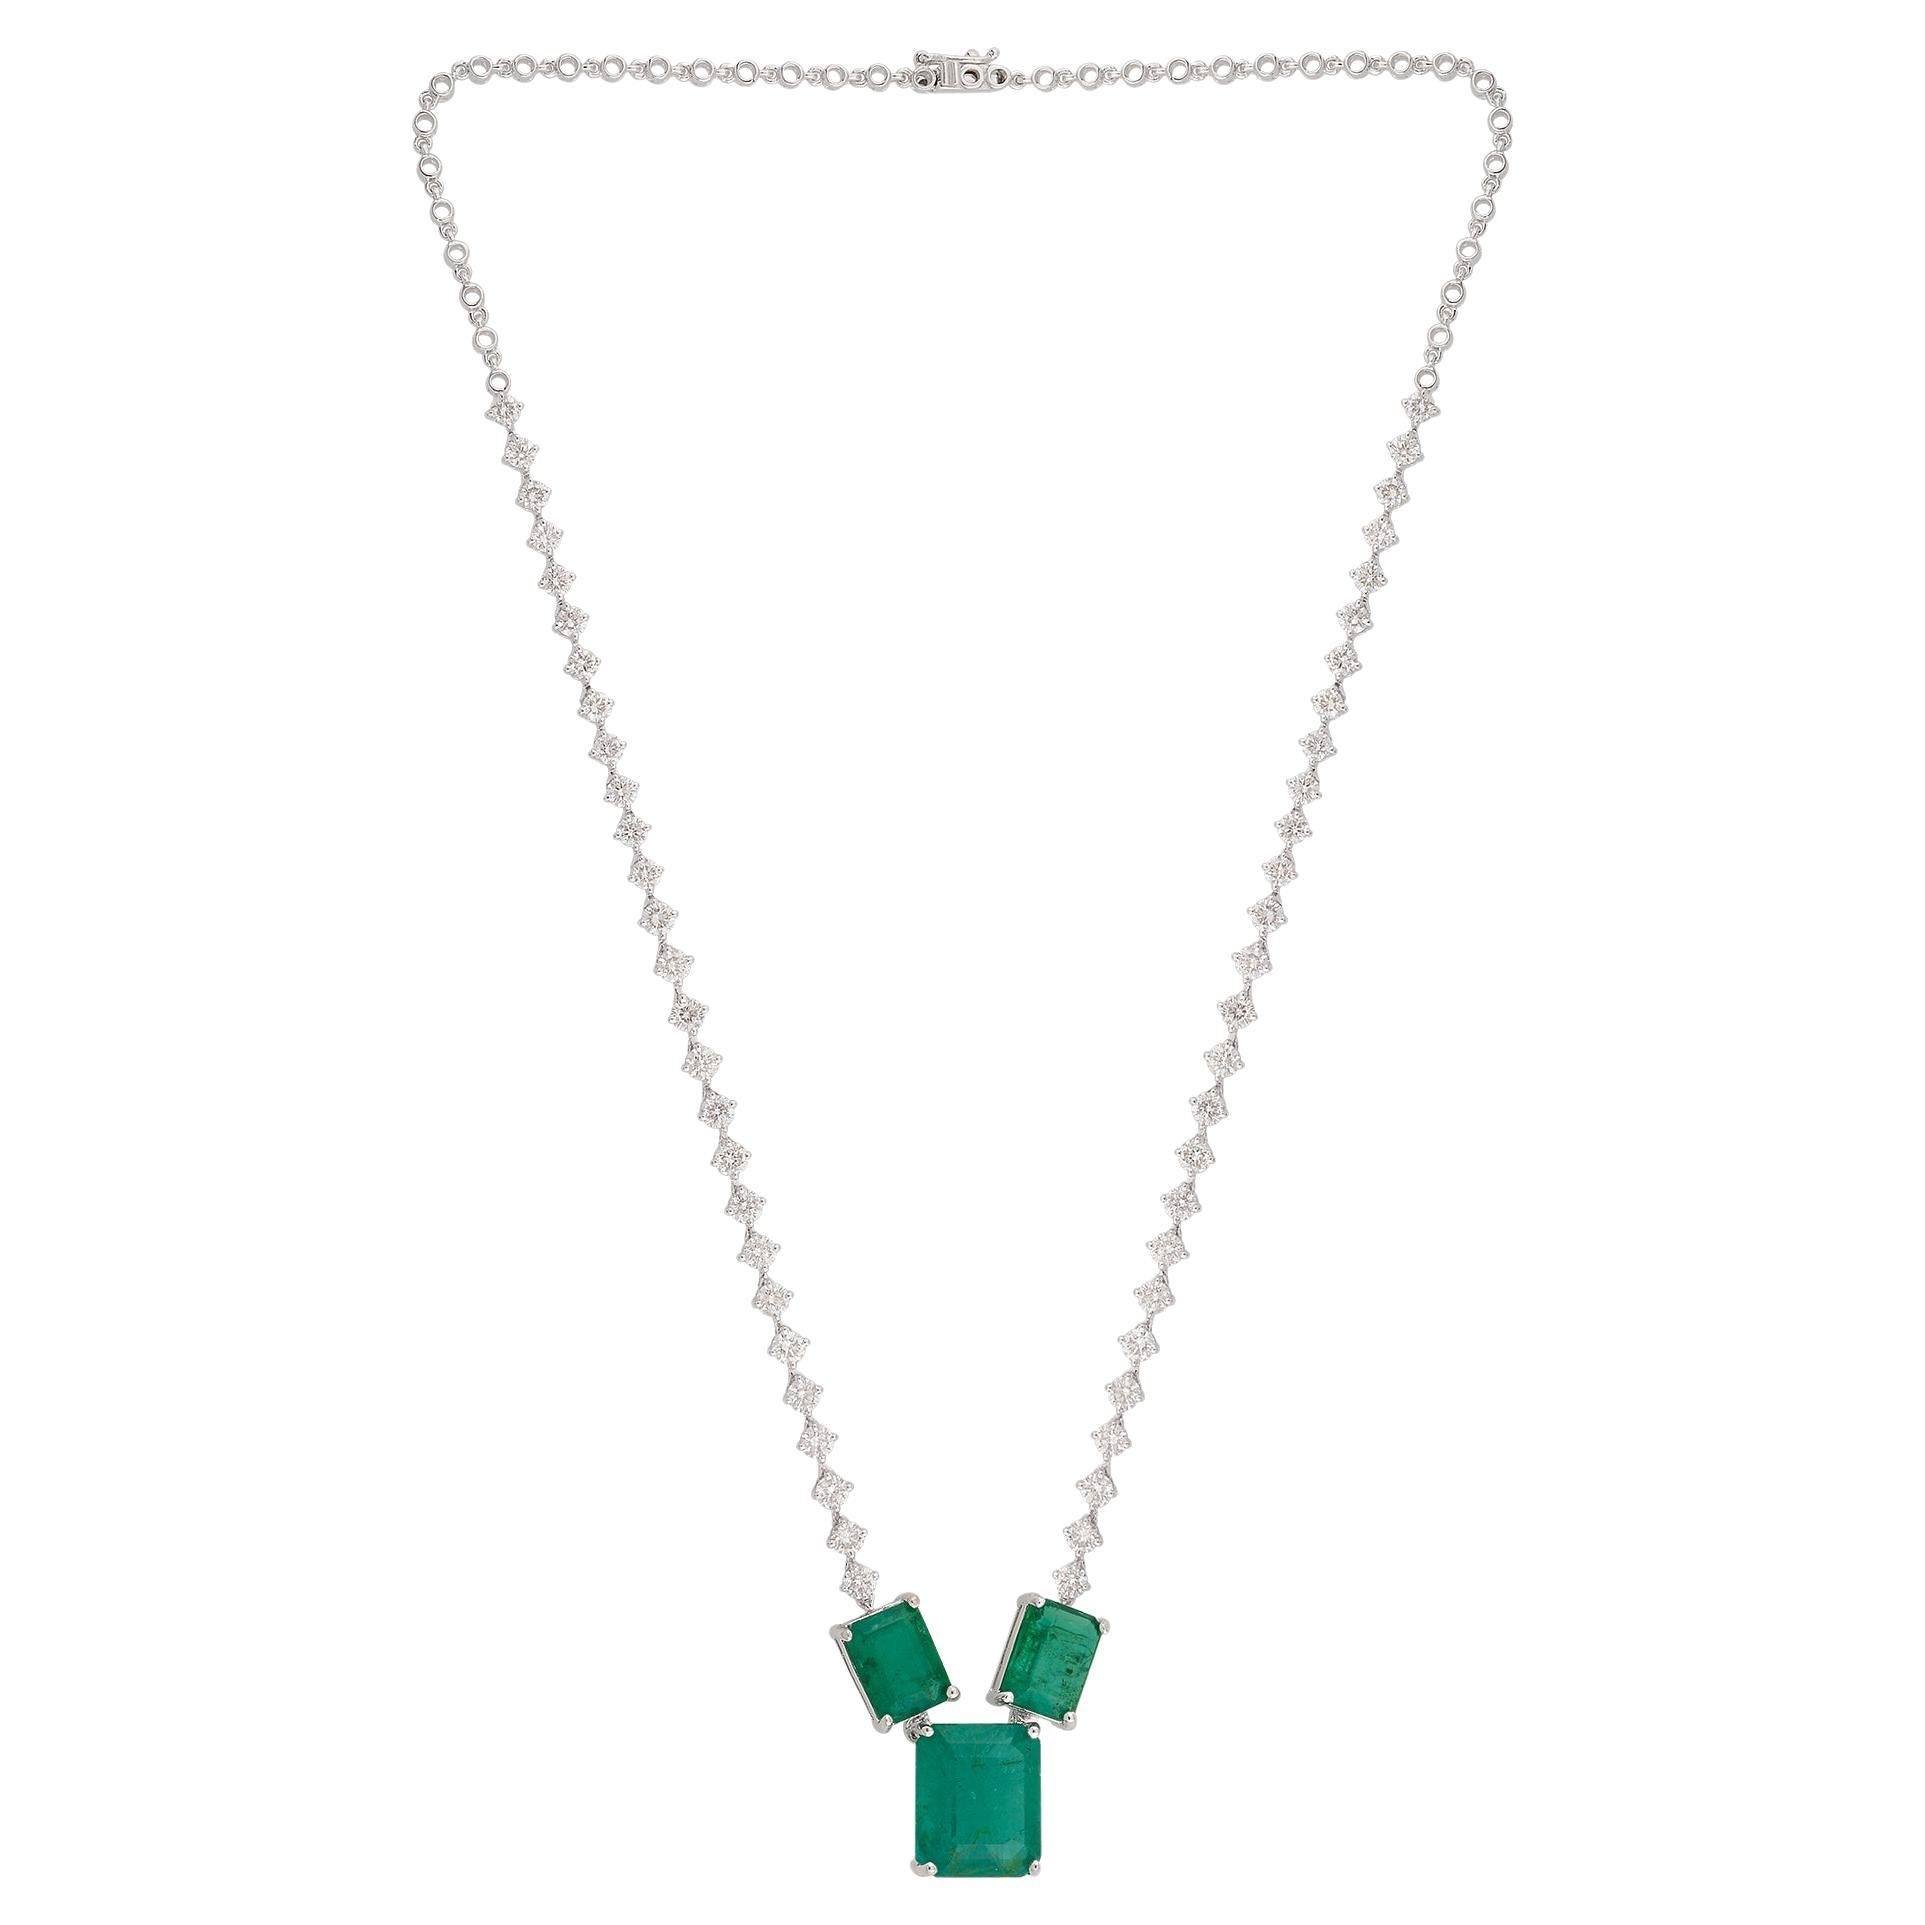 Zambian Emerald Gemstone Pendant Necklace Diamond 18 Karat White Gold Jewelry